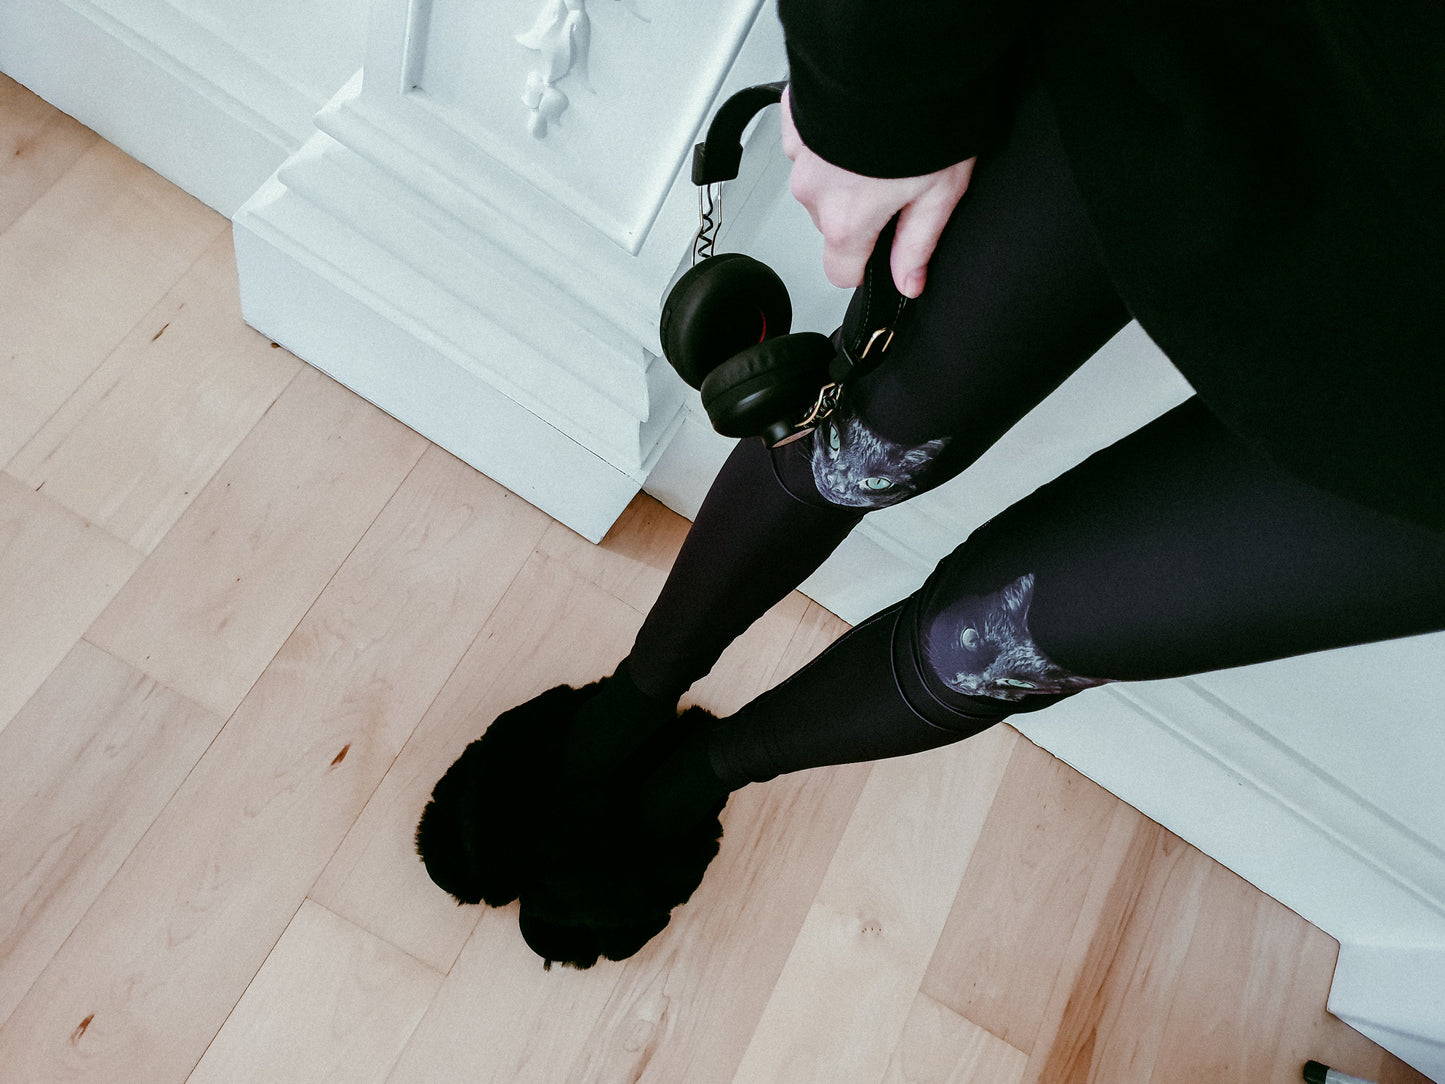 Women's Black Cat Leggings